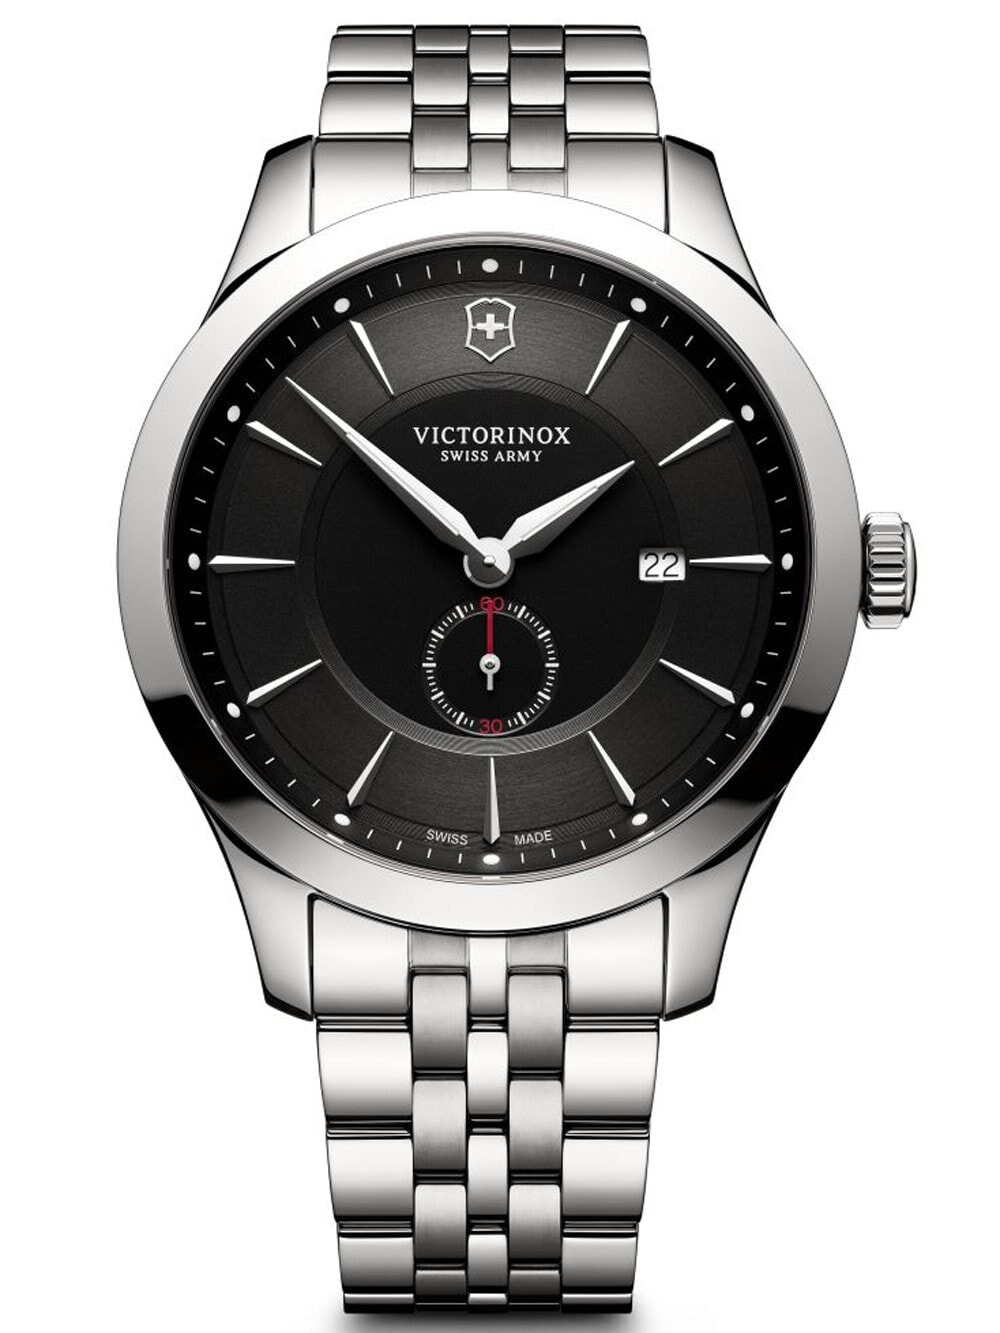 Мужские наручные часы с серебристым браслетом Victorinox 241762 Alliance Mens 44mm 10 ATM